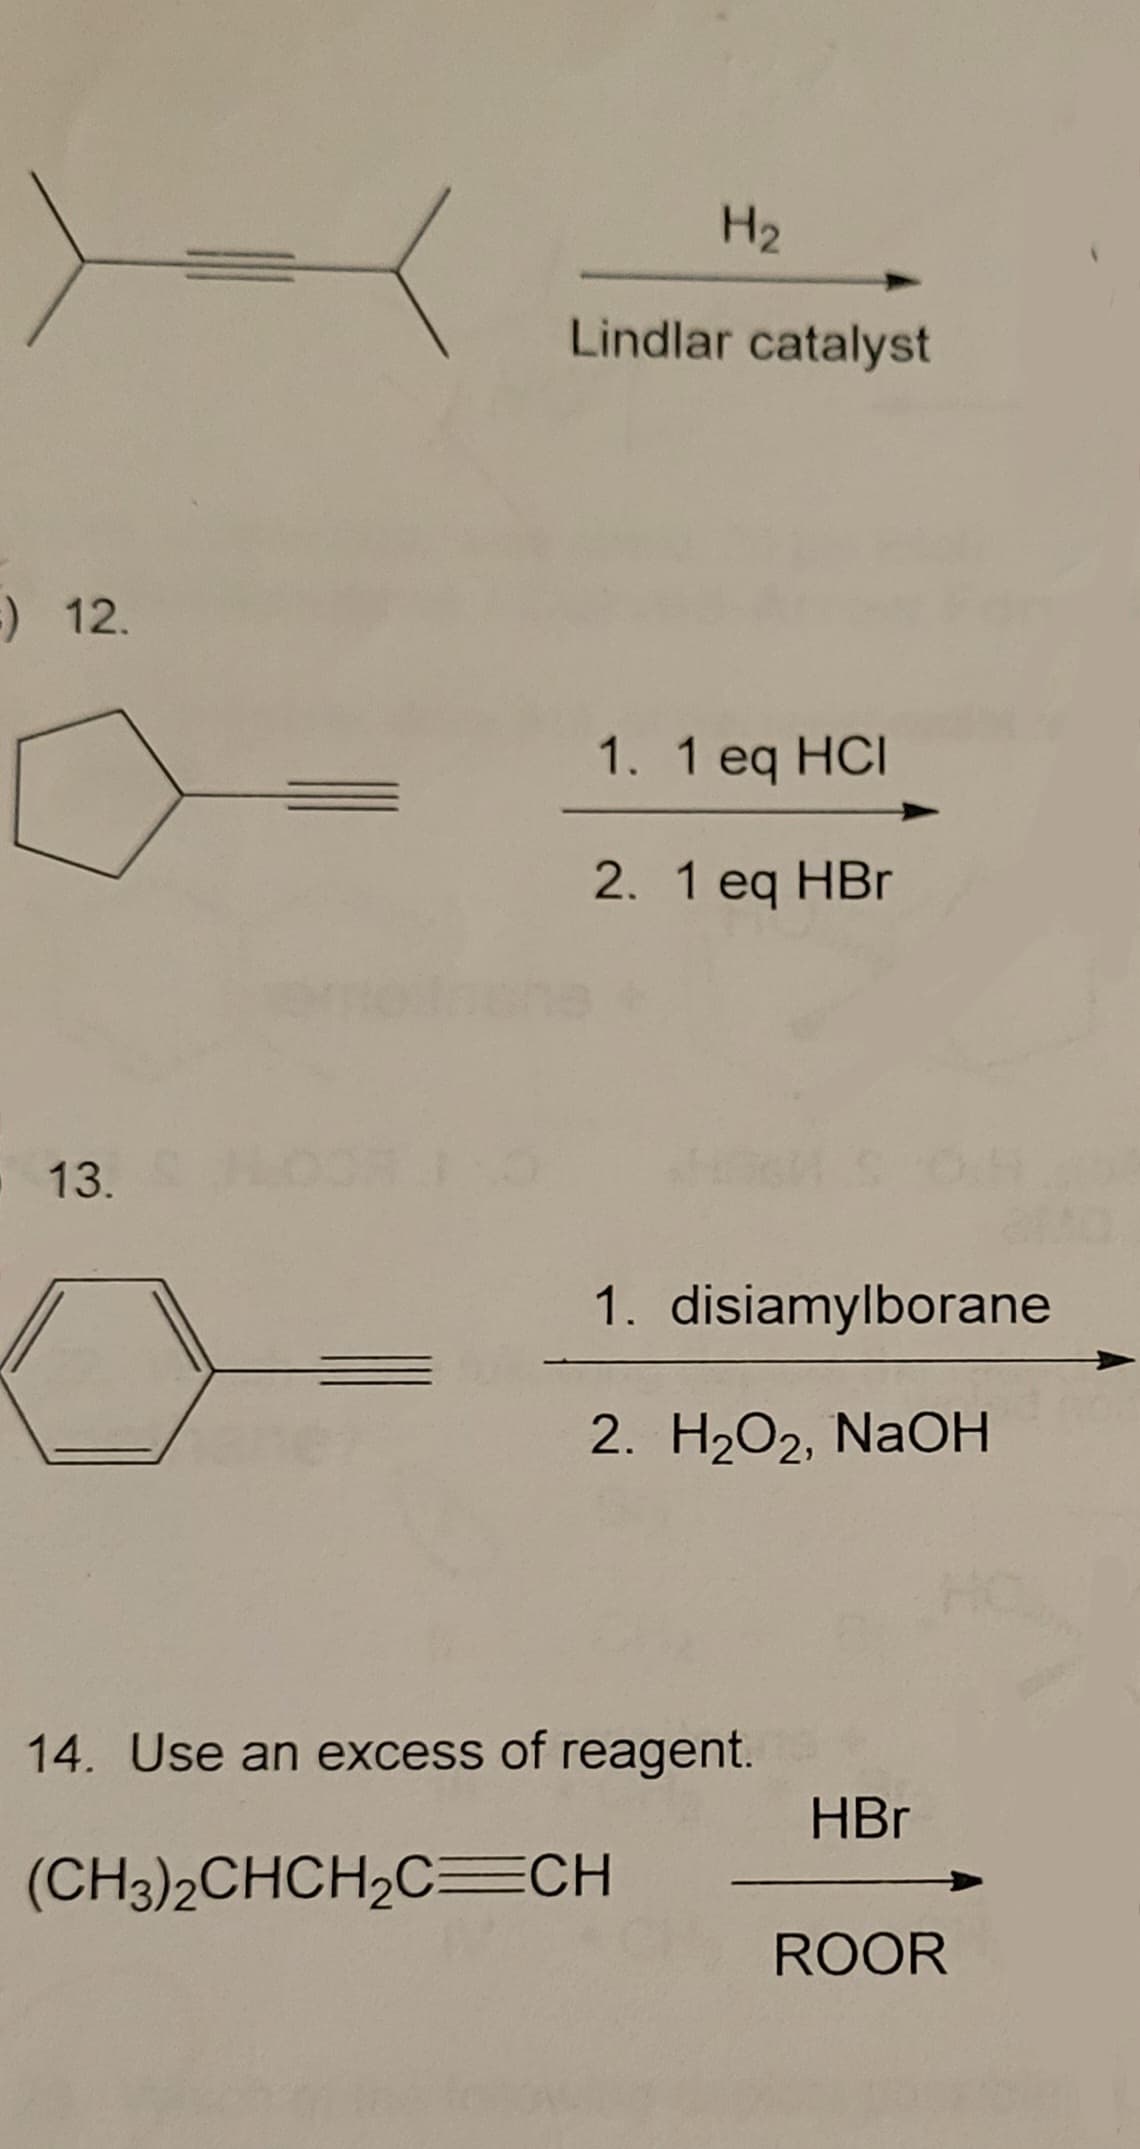 H2
Lindlar catalyst
) 12.
1. 1 eq HCI
2. 1 eq HBr
13.
1. disiamylborane
2. H2O2, NaOH
14. Use an excess of reagent.
HBr
(CH3)2CHCH2C=CH
ROOR
